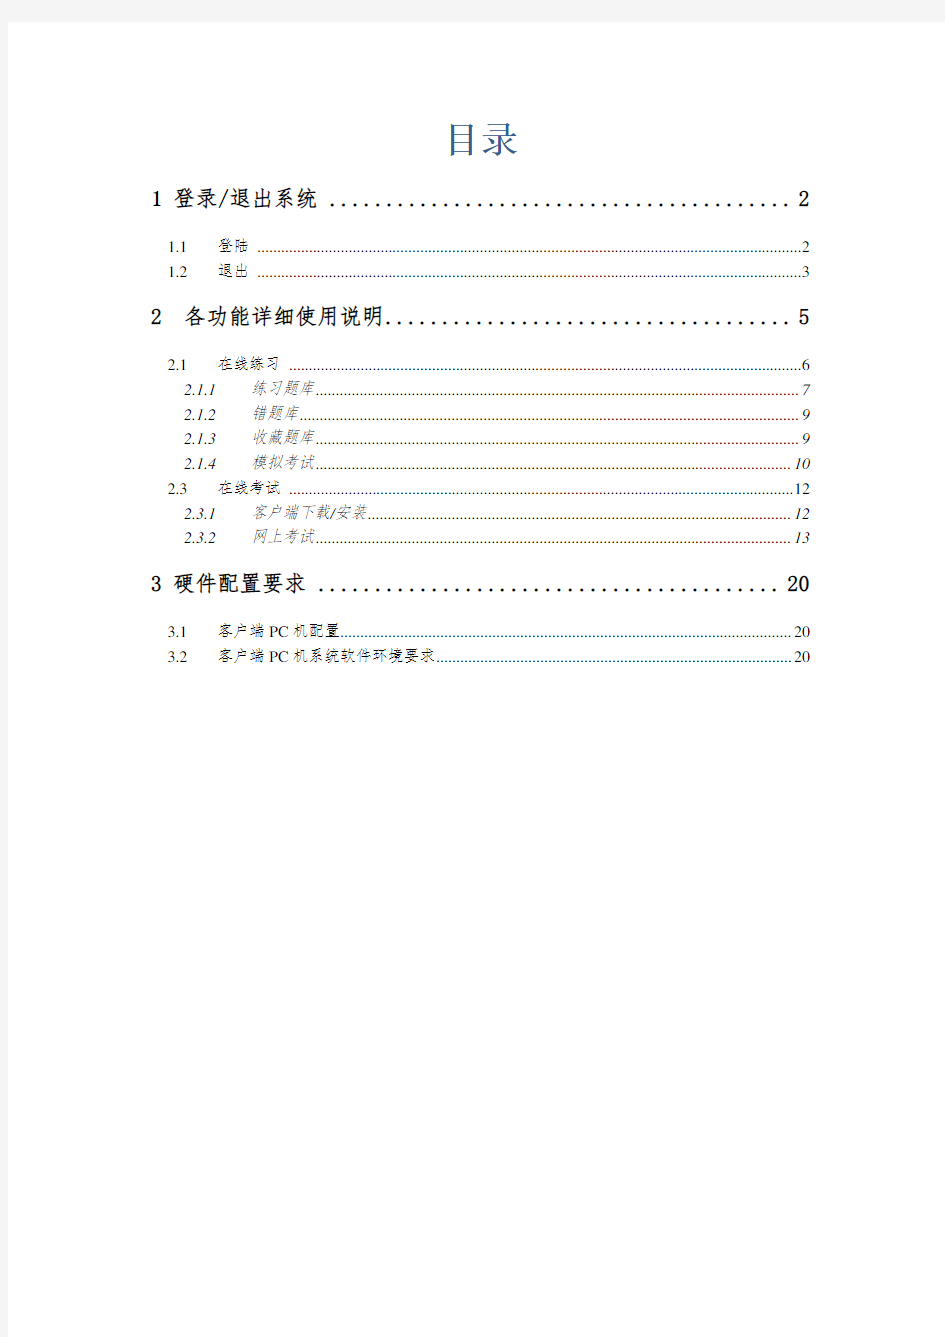 郑州大学现代远程教育学院-网上考试系统-用户使用手册